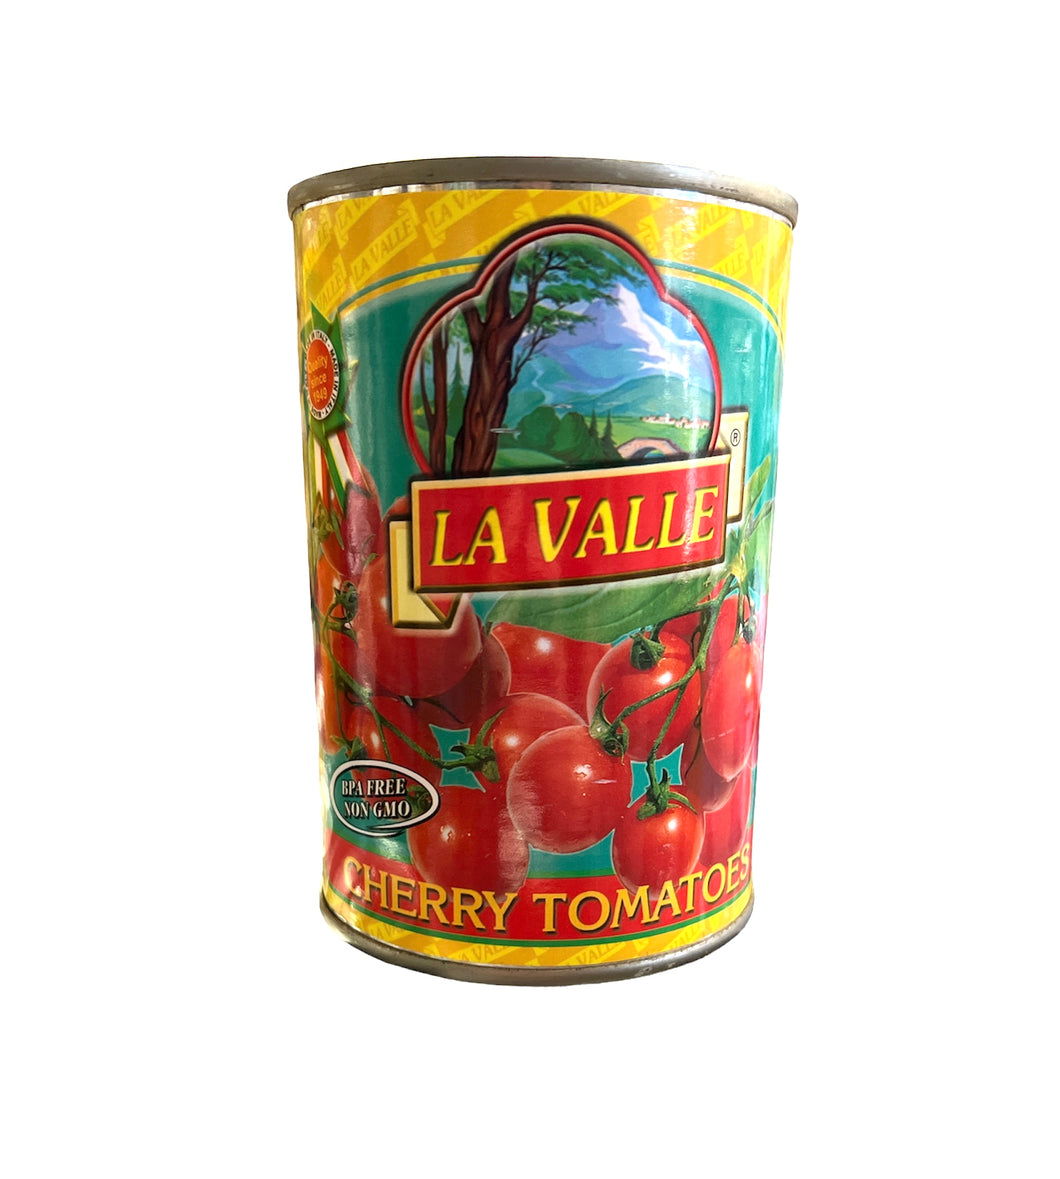 La Valle Cherry Tomatoes 14oz